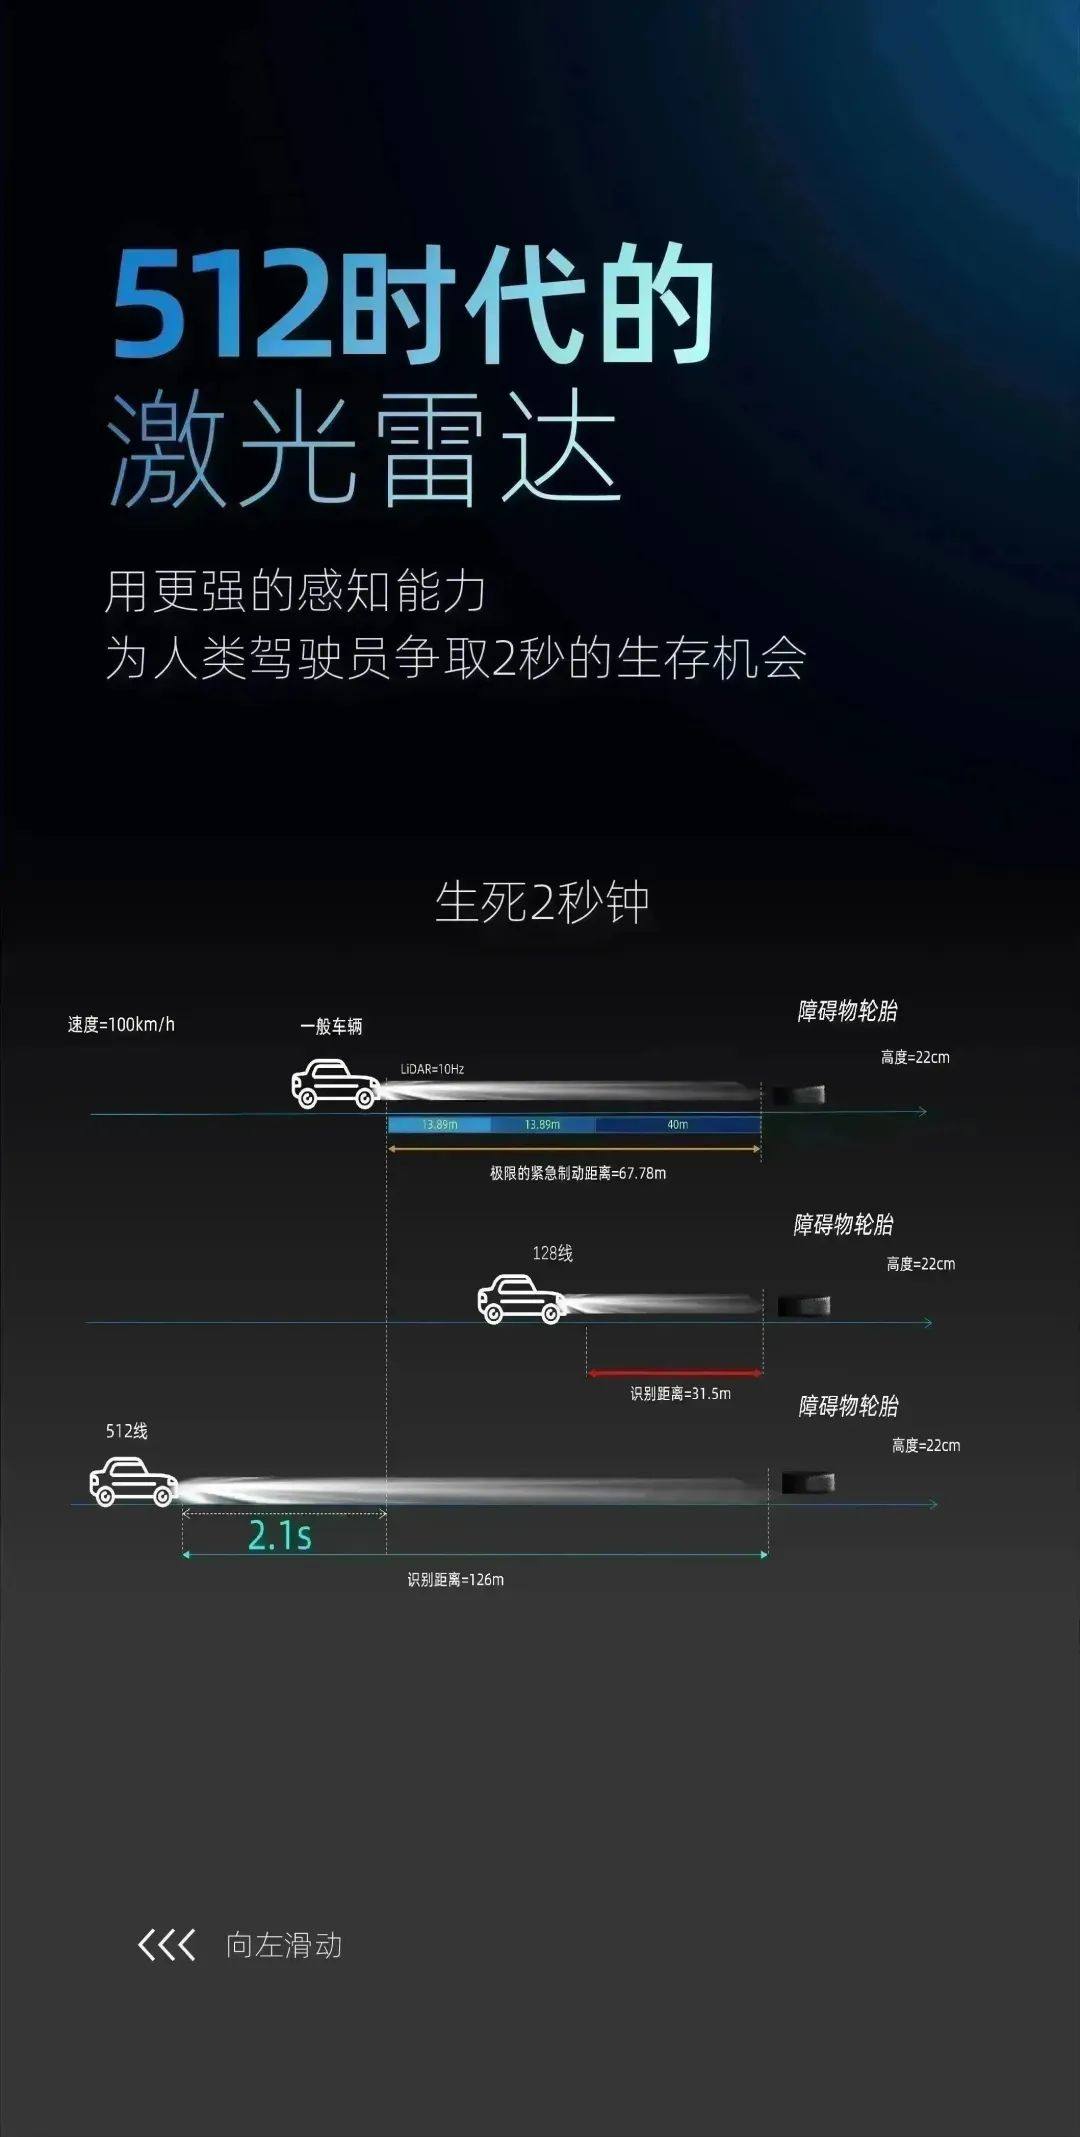 北醒发布全球首个车载512激光雷达平台，助力自动驾驶场景进阶